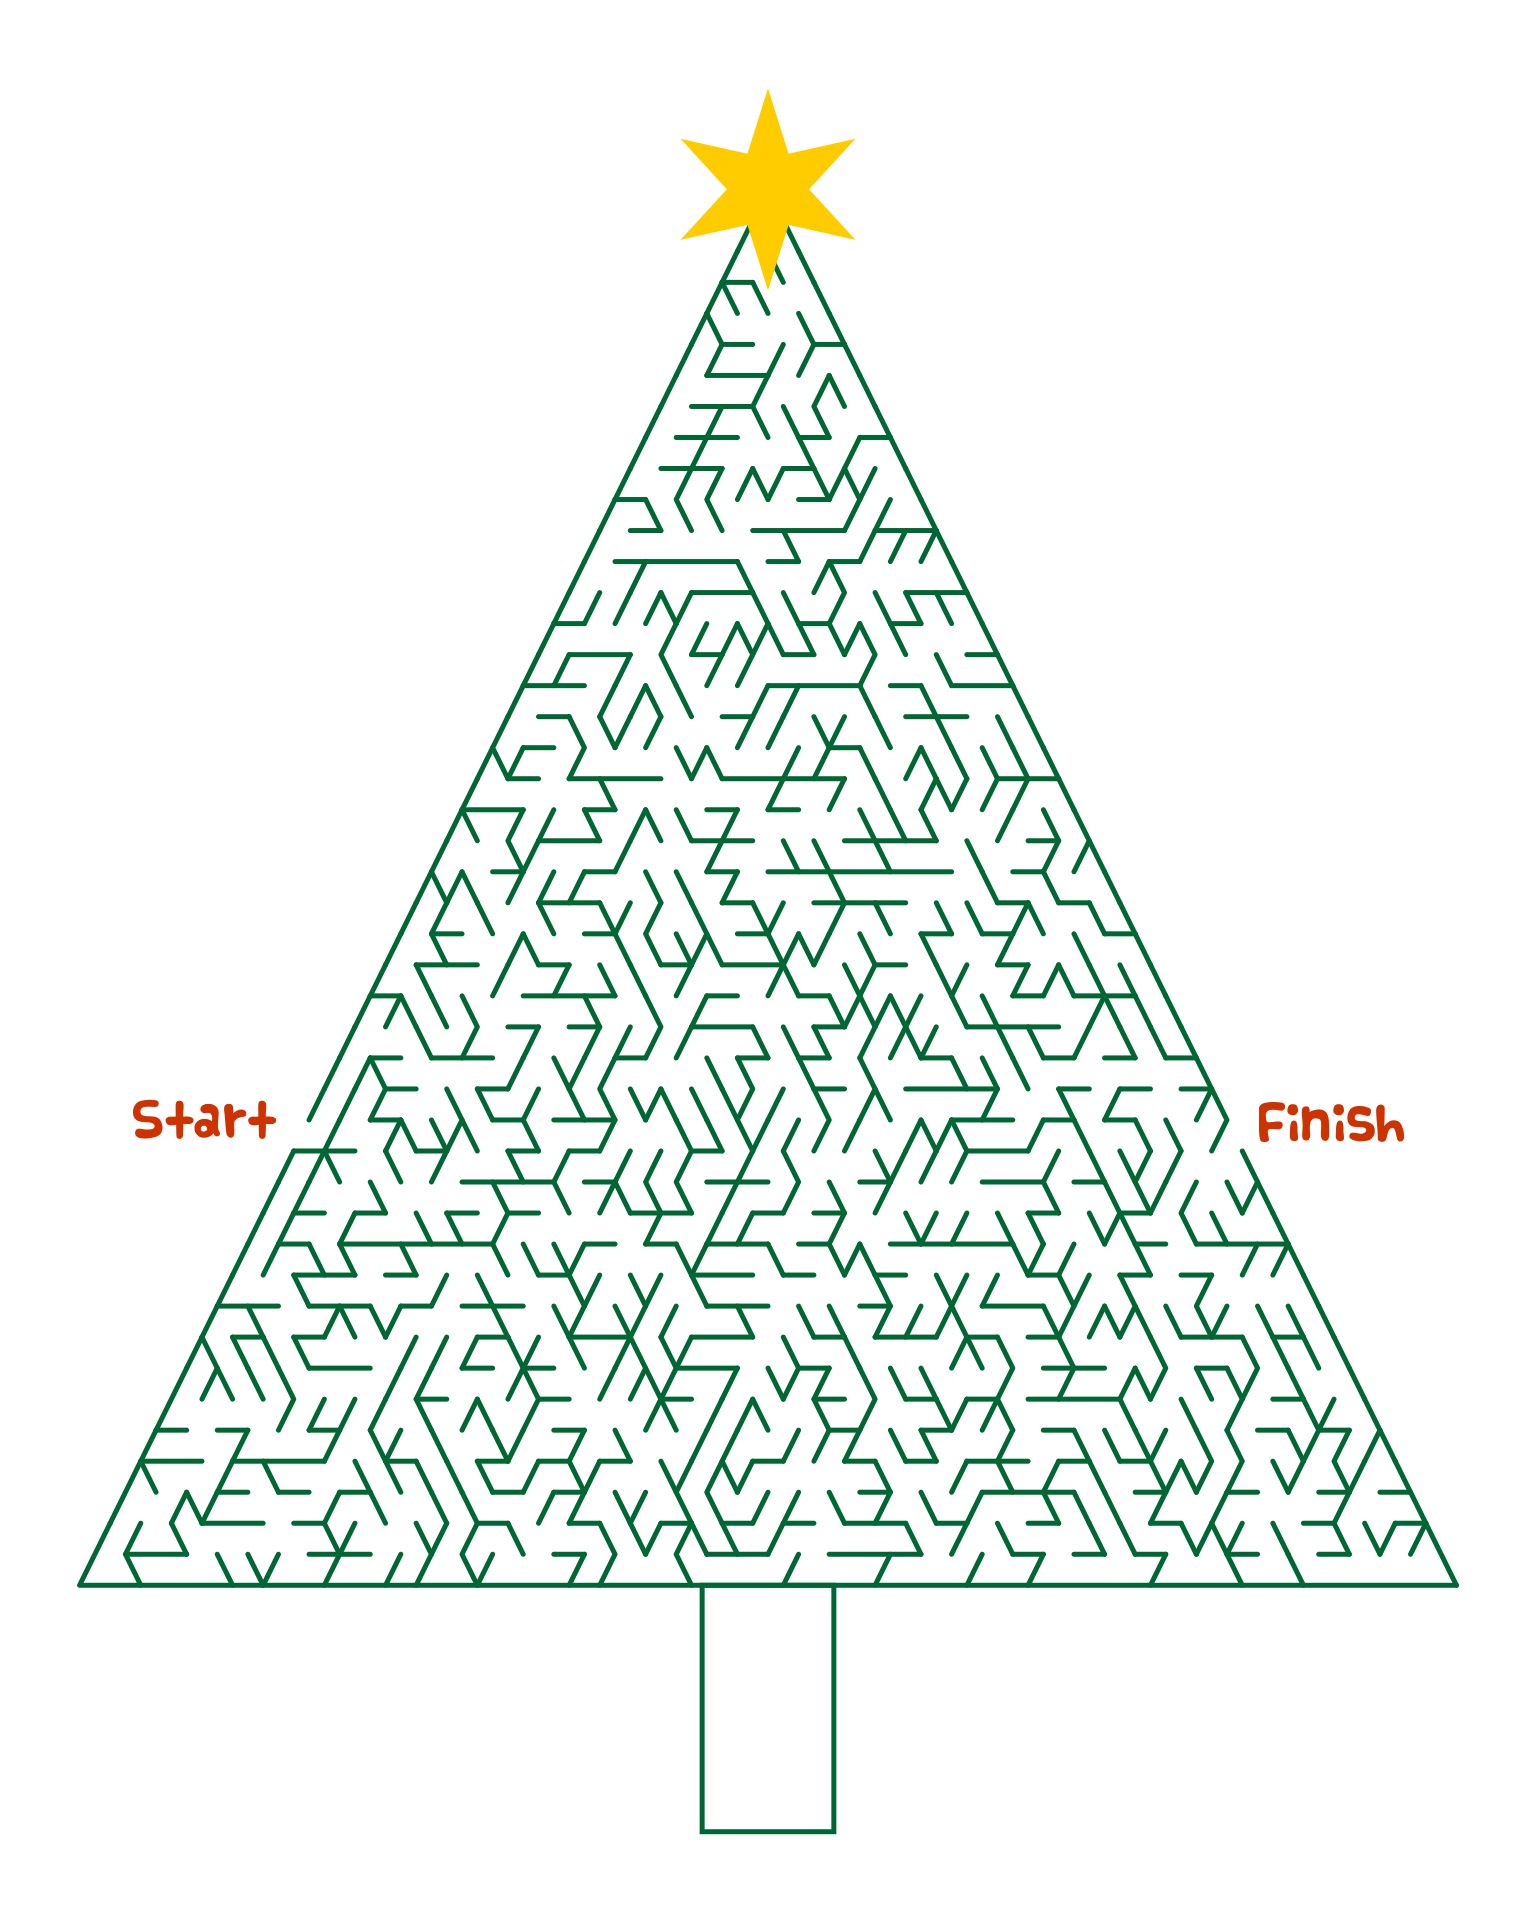 Christmas Tree Maze Hard Printable